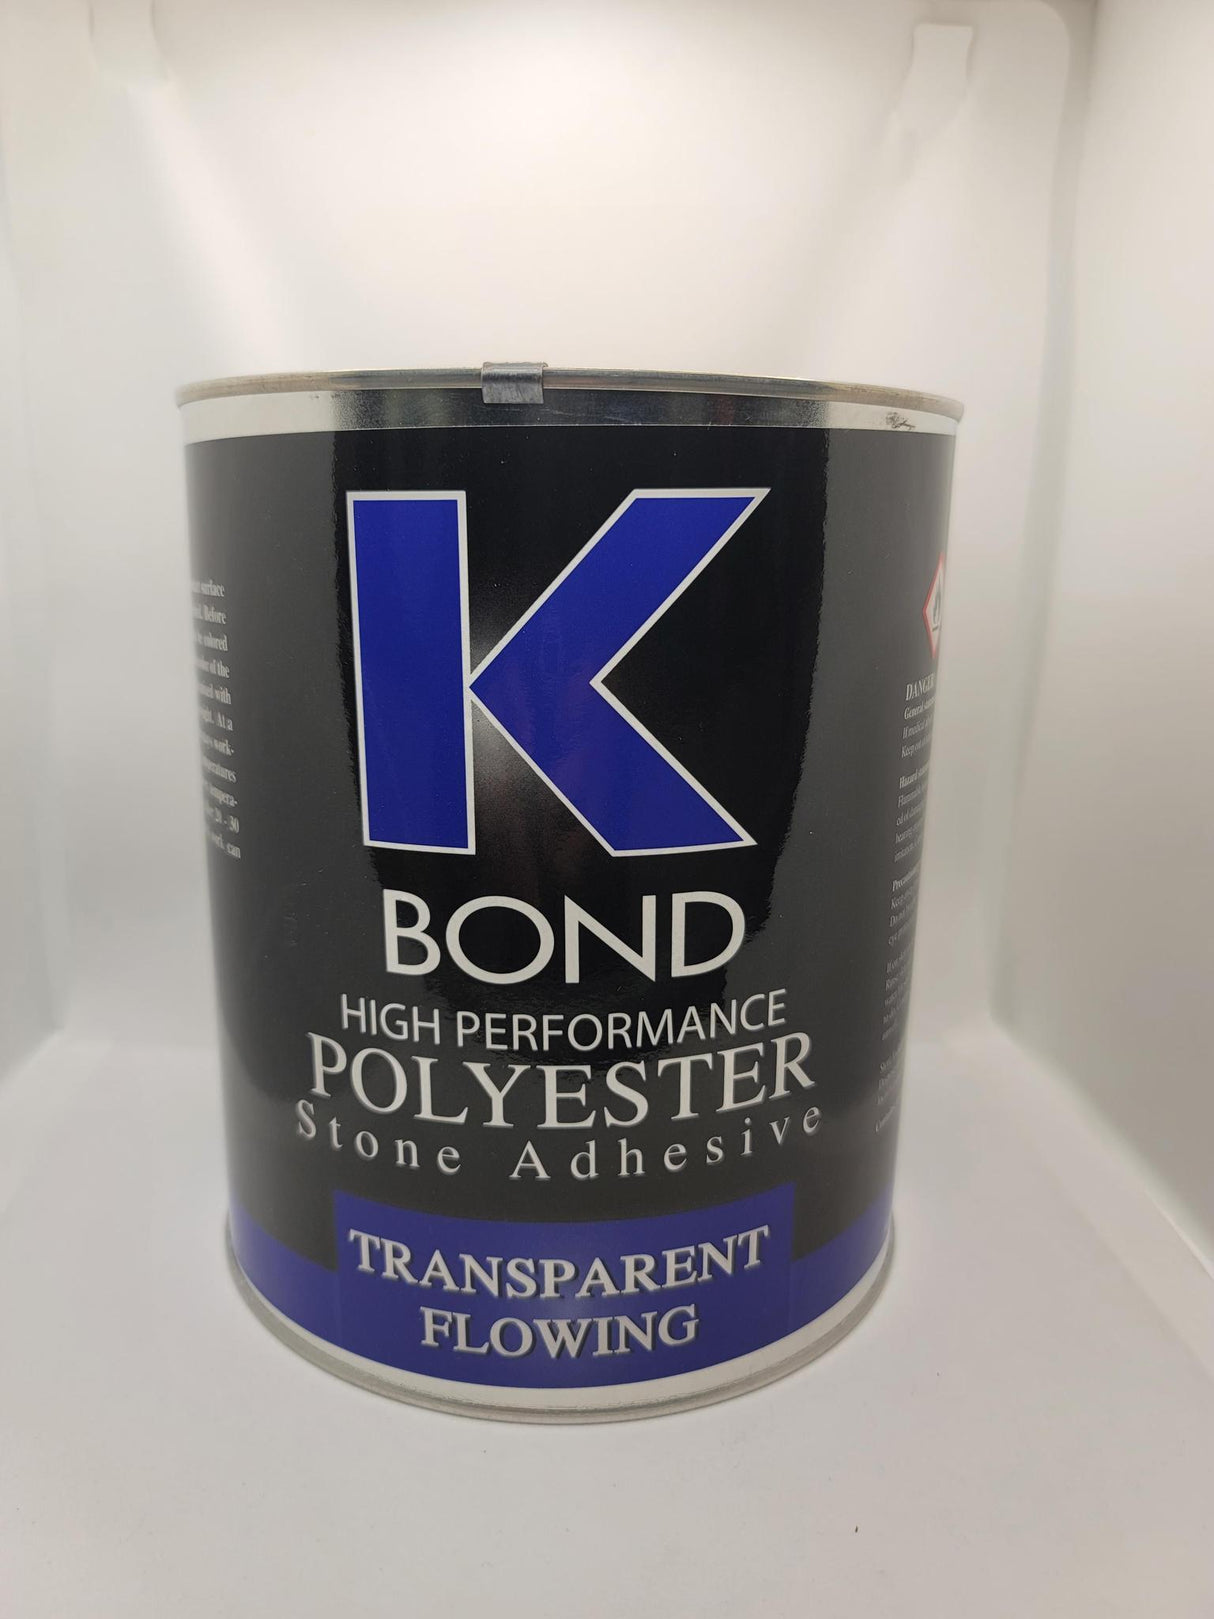 K Bond Polyester Transparent Flowing